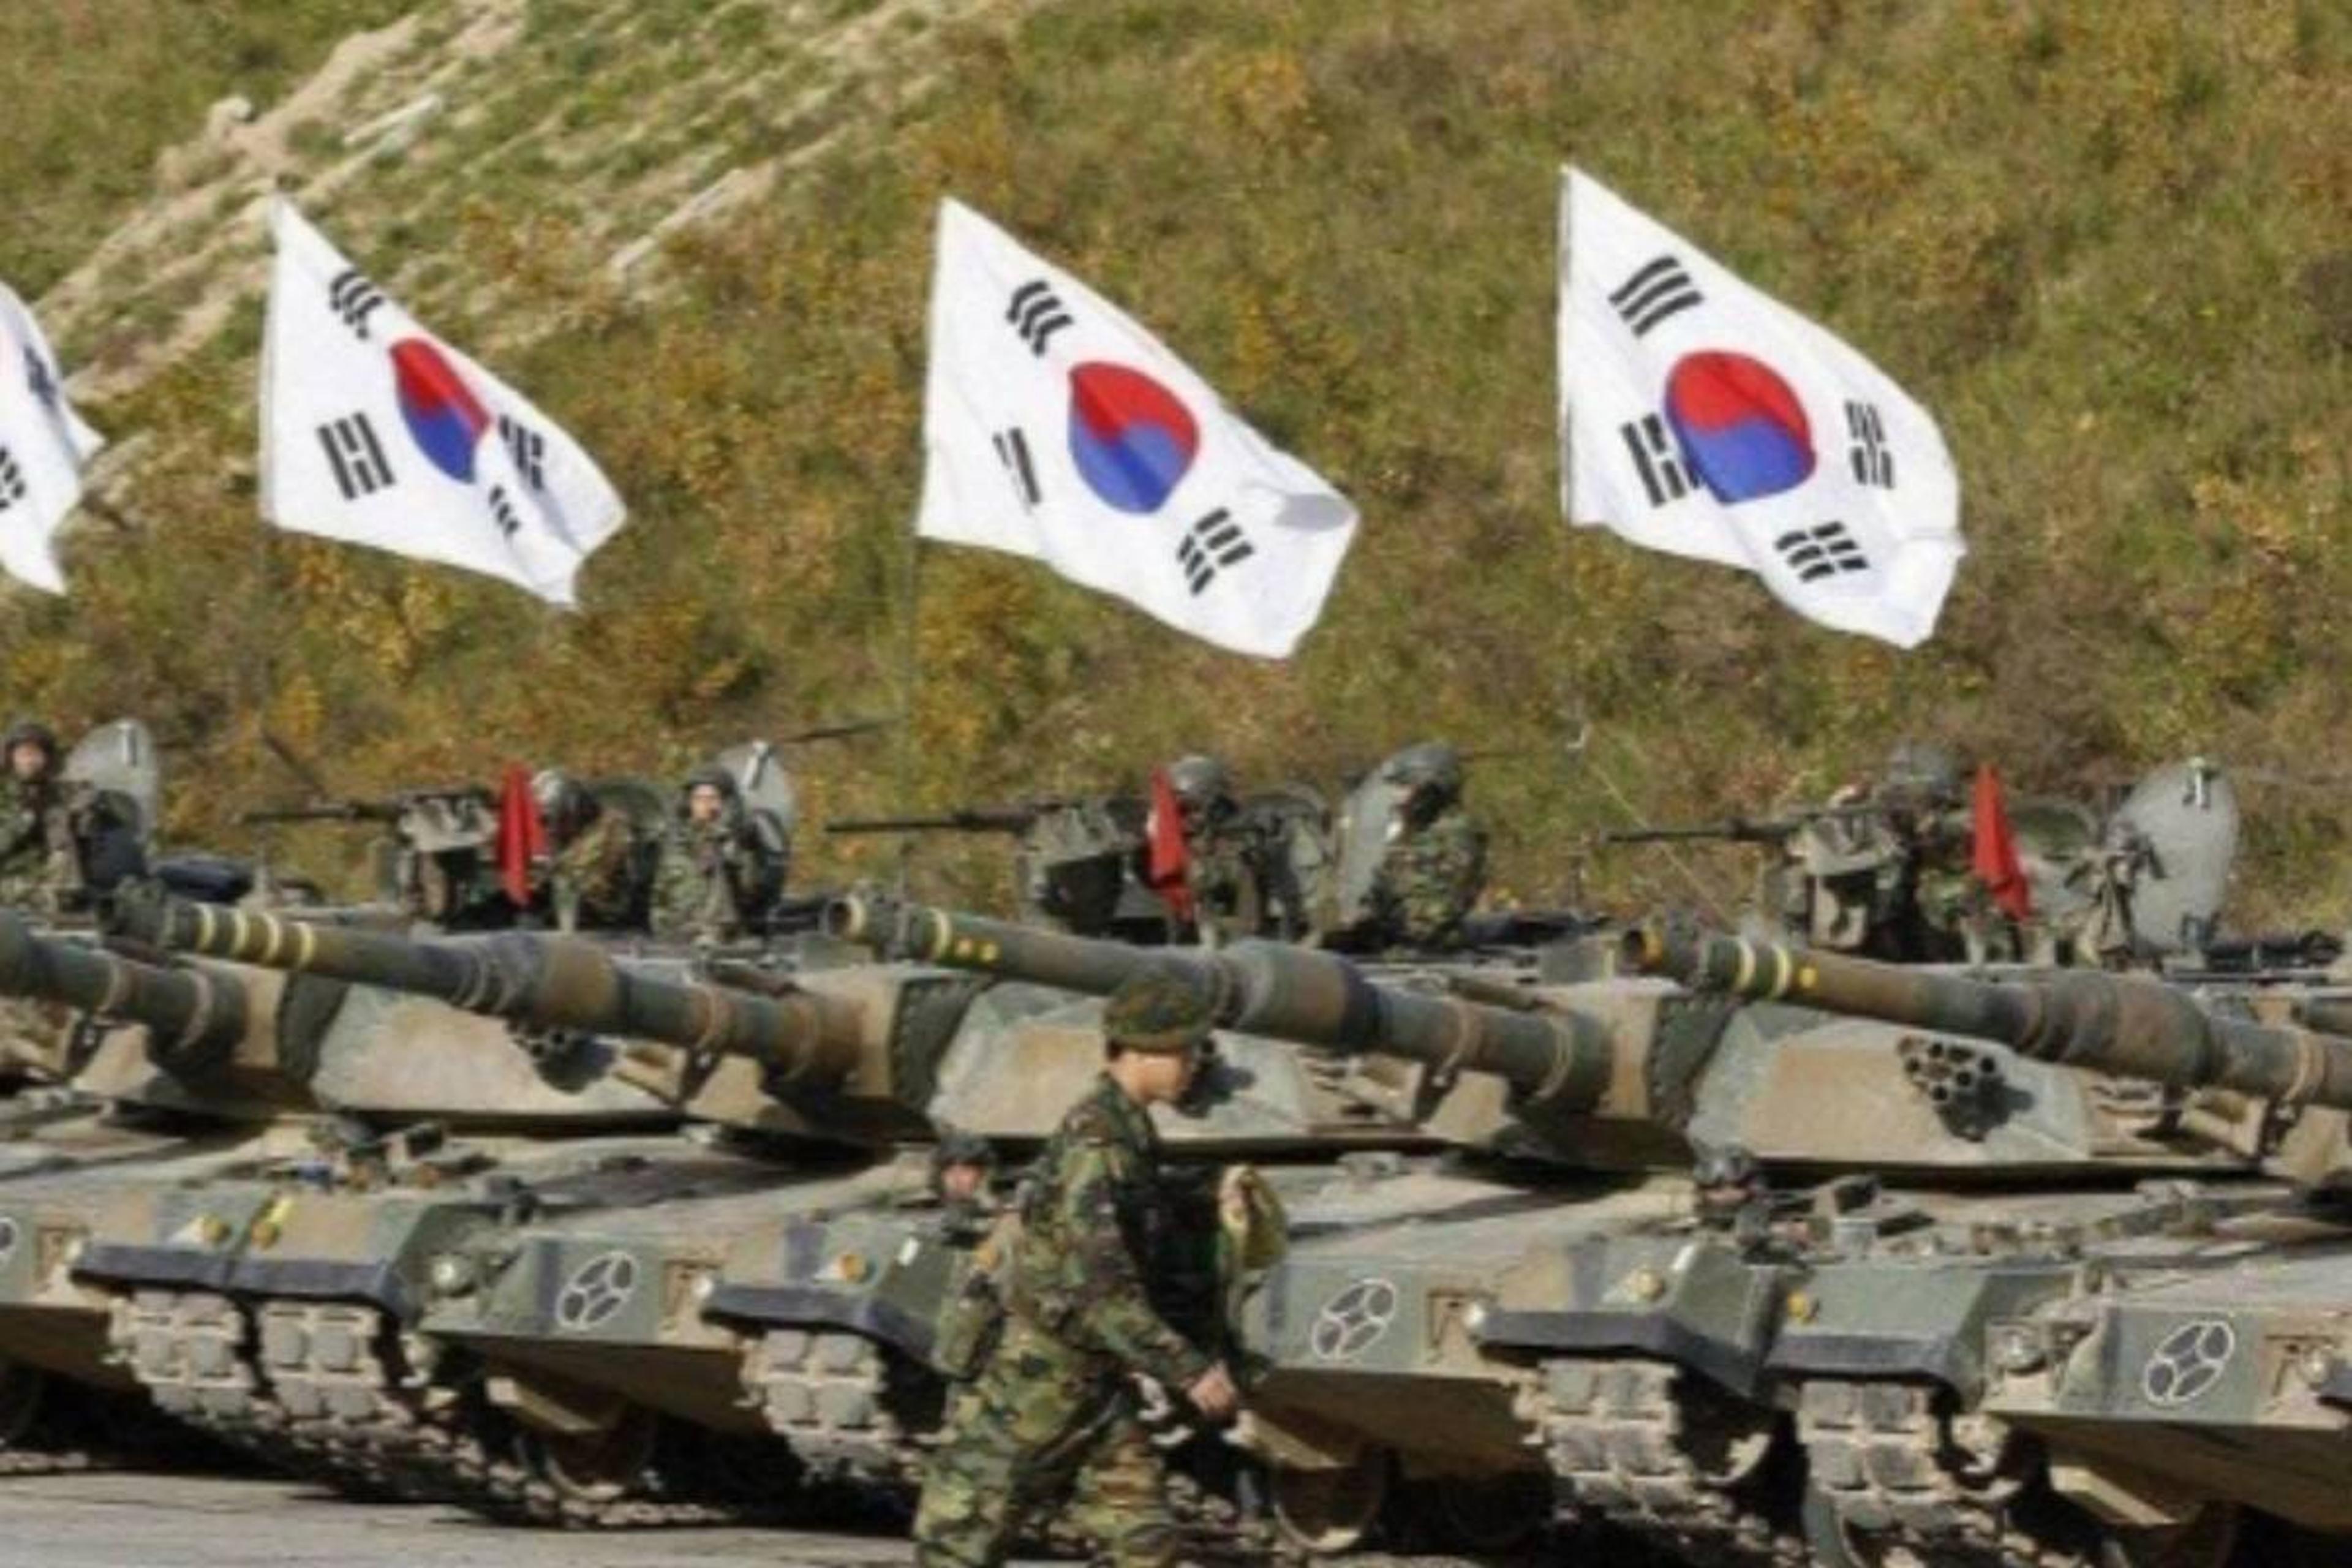 War News : दक्षिण और उत्तर कोरिया में होने वाला है युद्ध ? बॉर्डर पर किया
युद्धाभ्यास